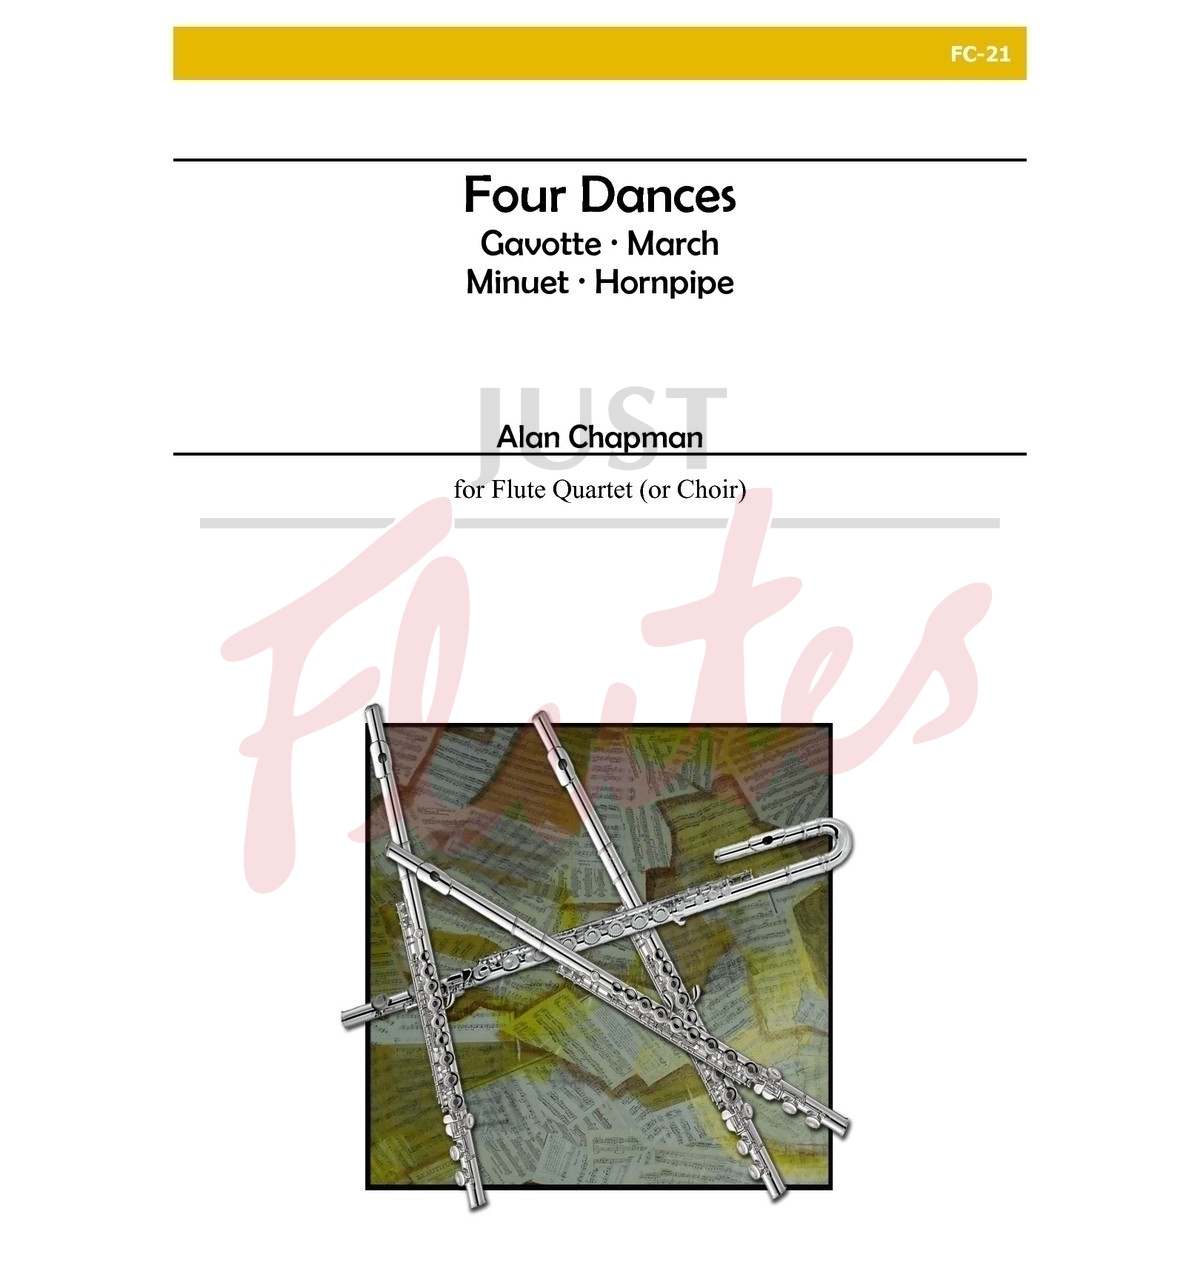 Four Dances for Flute Quartet/Choir